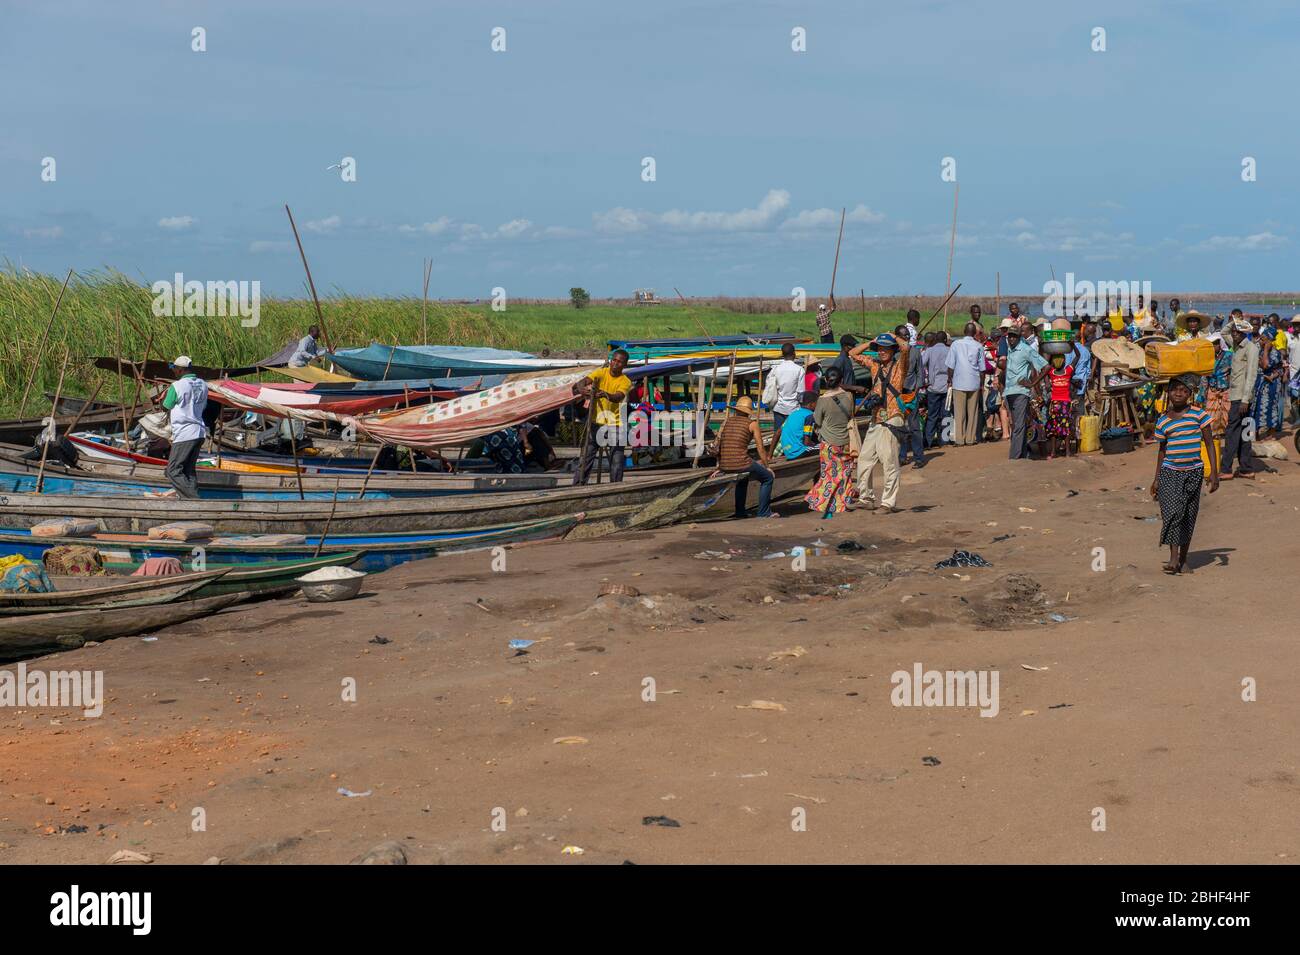 Luogo di sbarco per le barche da Ganvie, un villaggio unico costruito su palafitte nel Lago Nokoue vicino Cotonou, Benin. Foto Stock